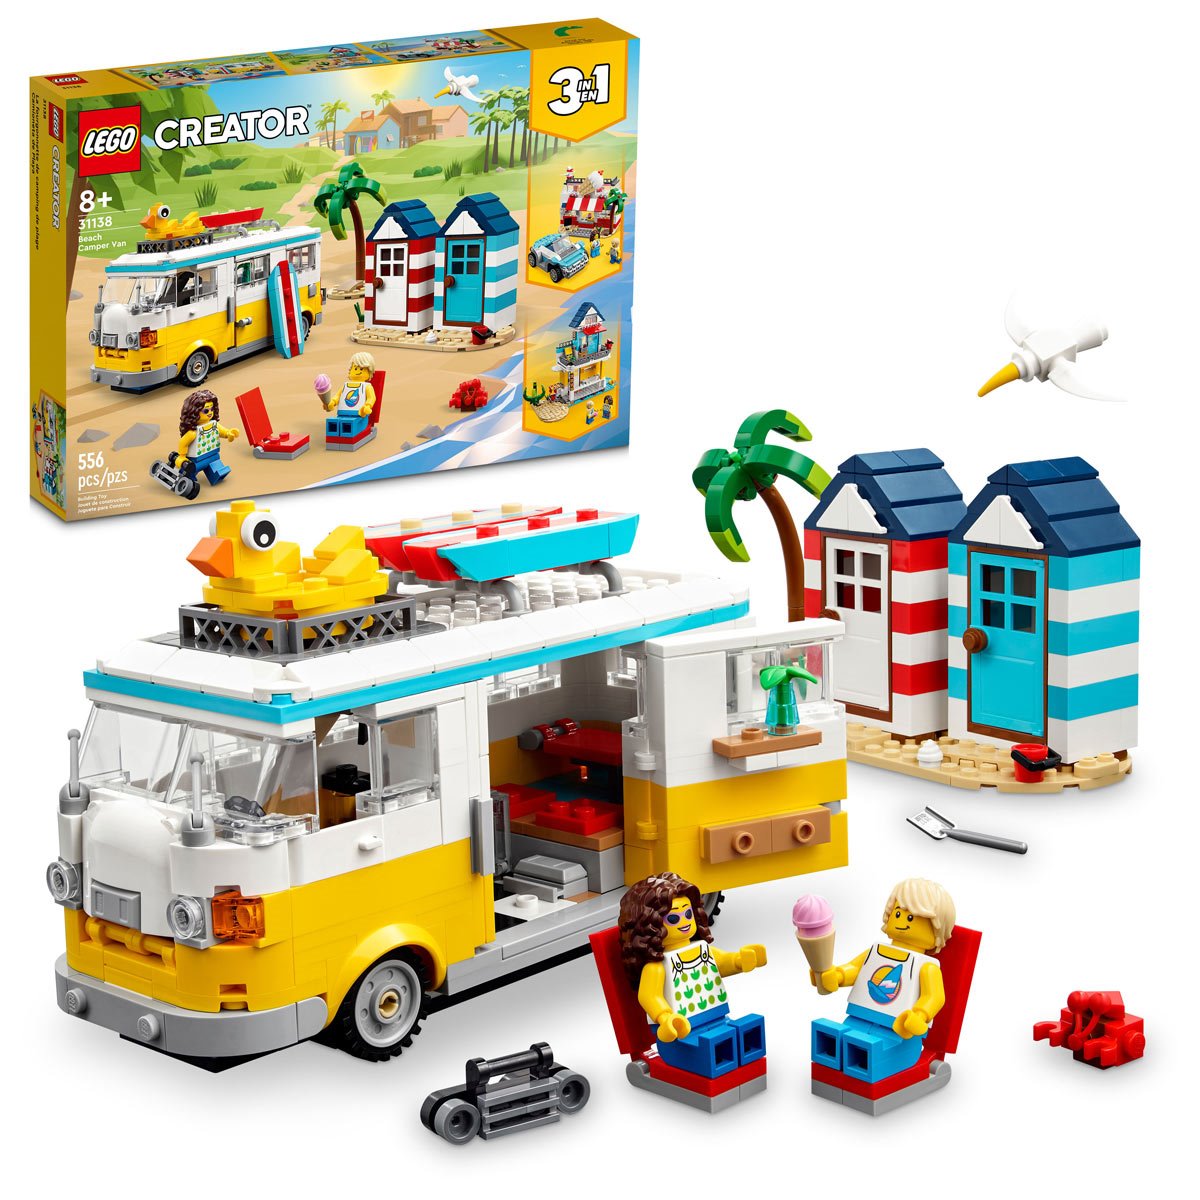 LEGO Creator 3-in-1 Beach Camper